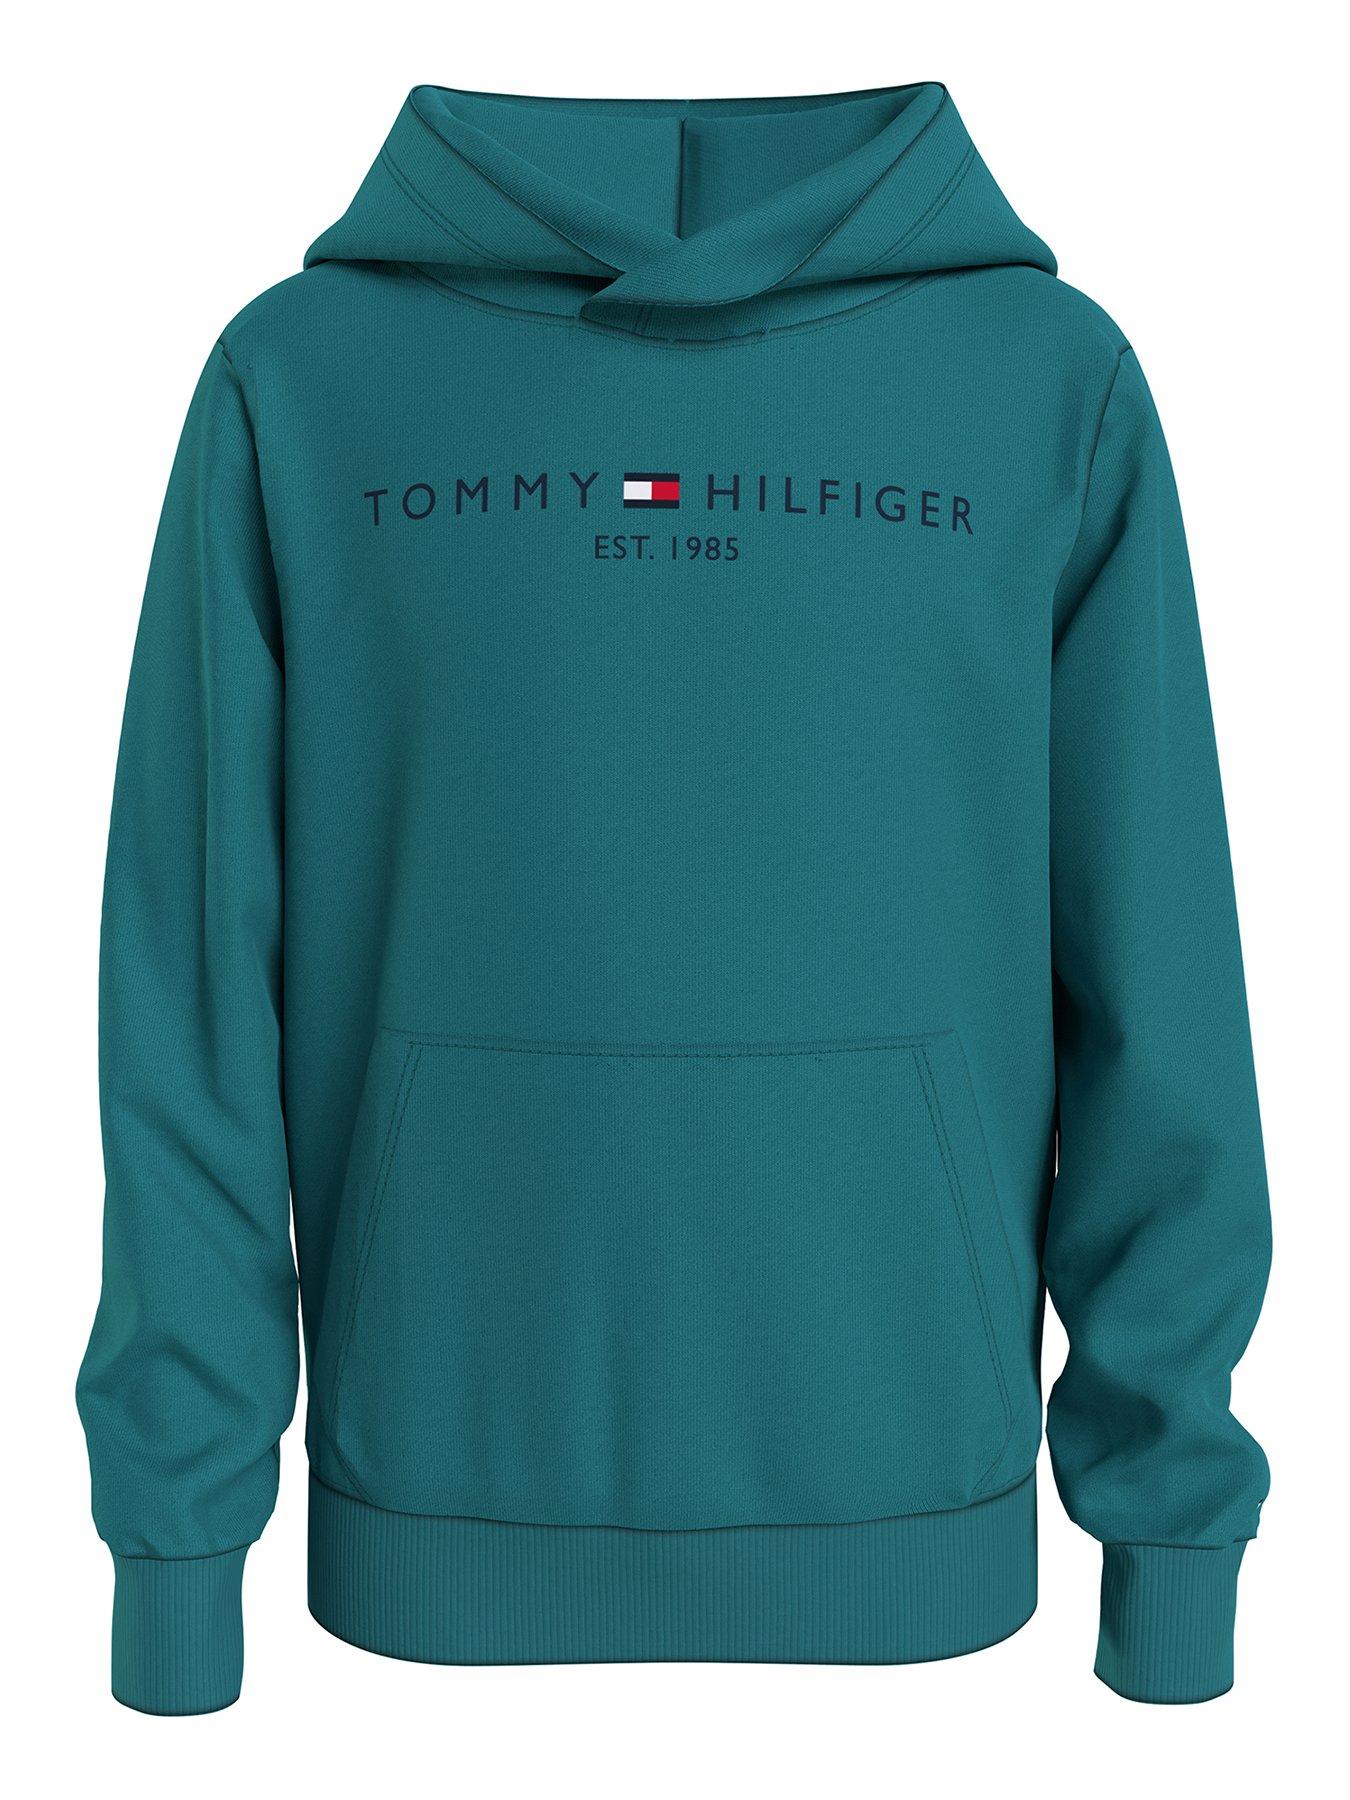 Tommy Hilfiger Baby Essential Sweatshirt Pullover Unisex-Bimbi 